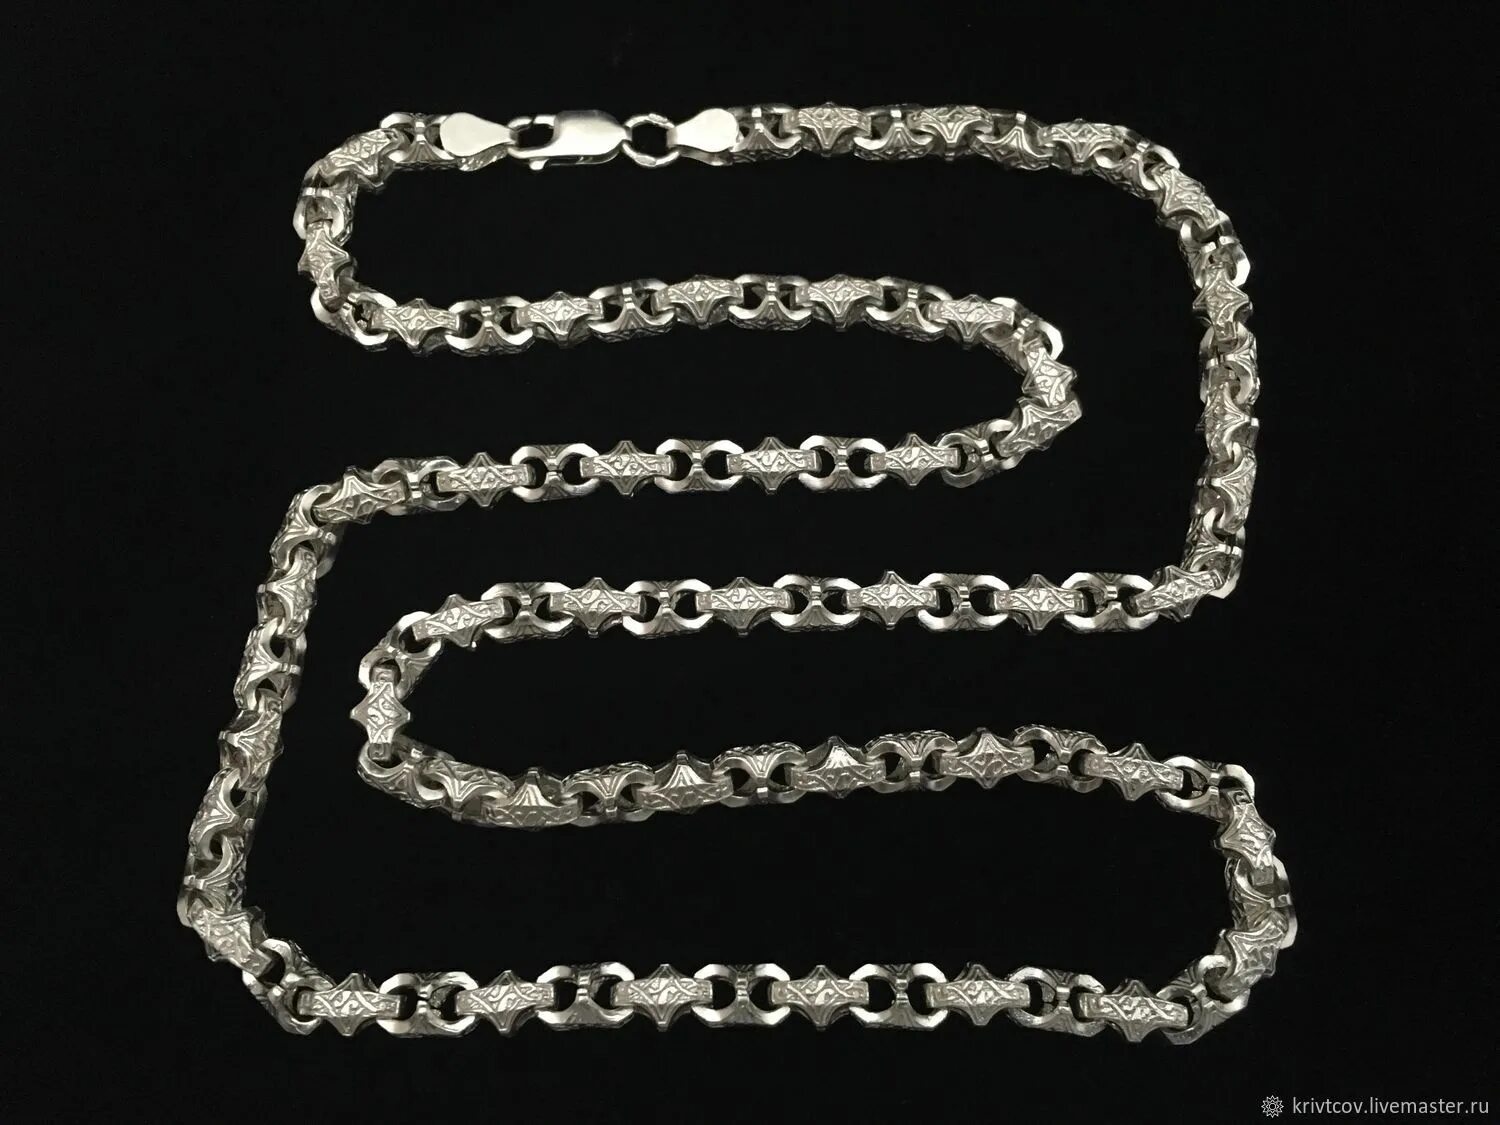 Цепь краб. Серебряная цепочка 250 грамм. Серебряная цепь краб 65 см. Цепь серебро плетение краб. Цепь литиевая краб 125 грамм.